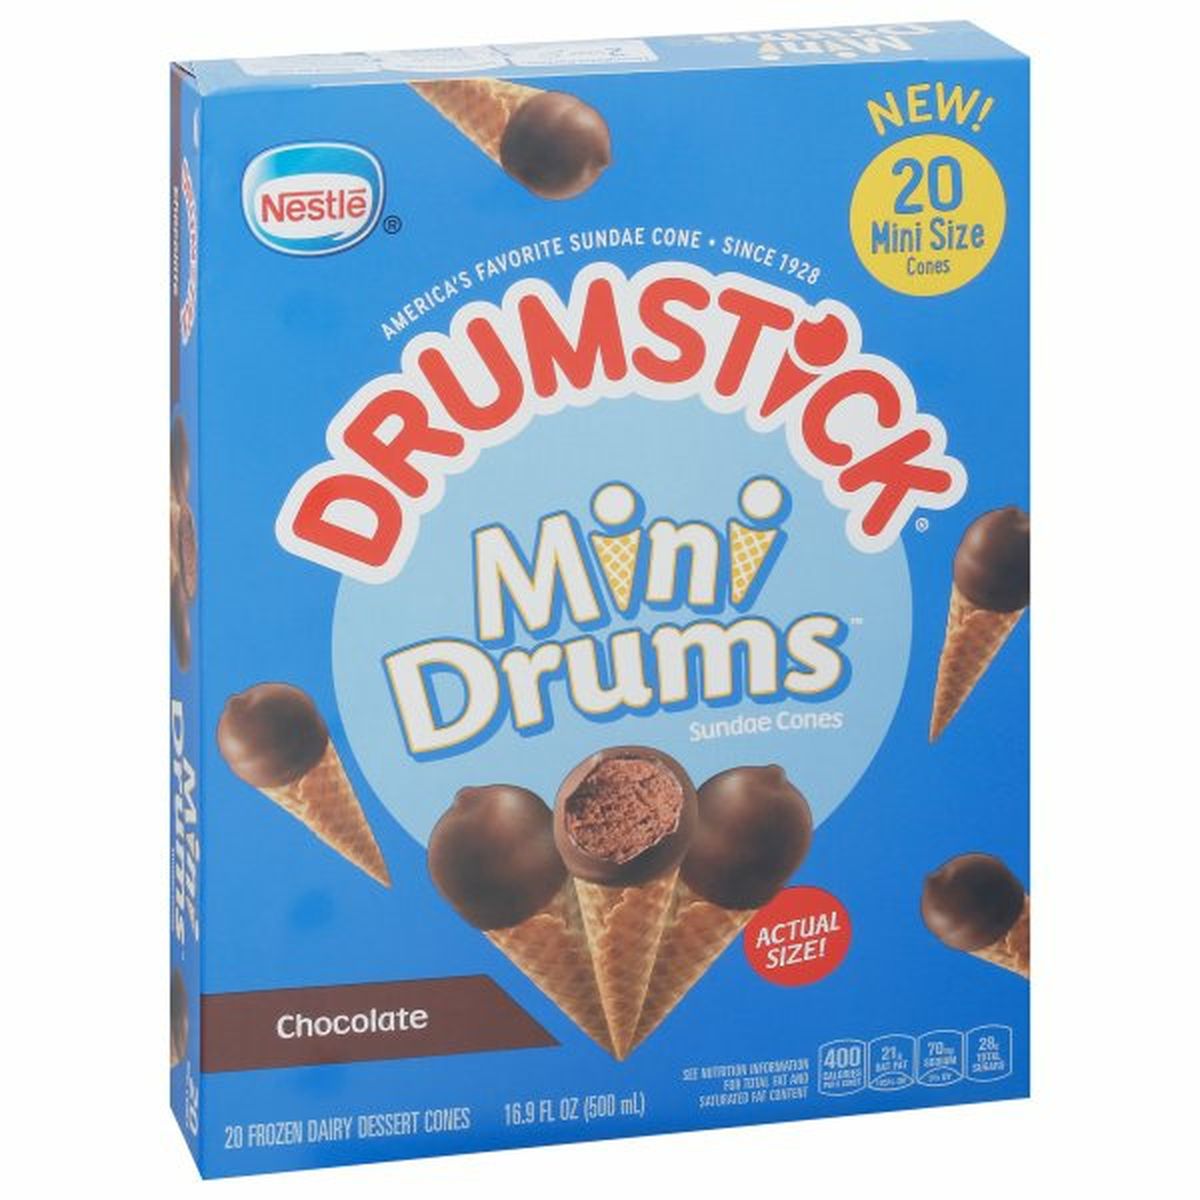 Calories in Drumstick Mini Drums Sundae Cones, Chocolate